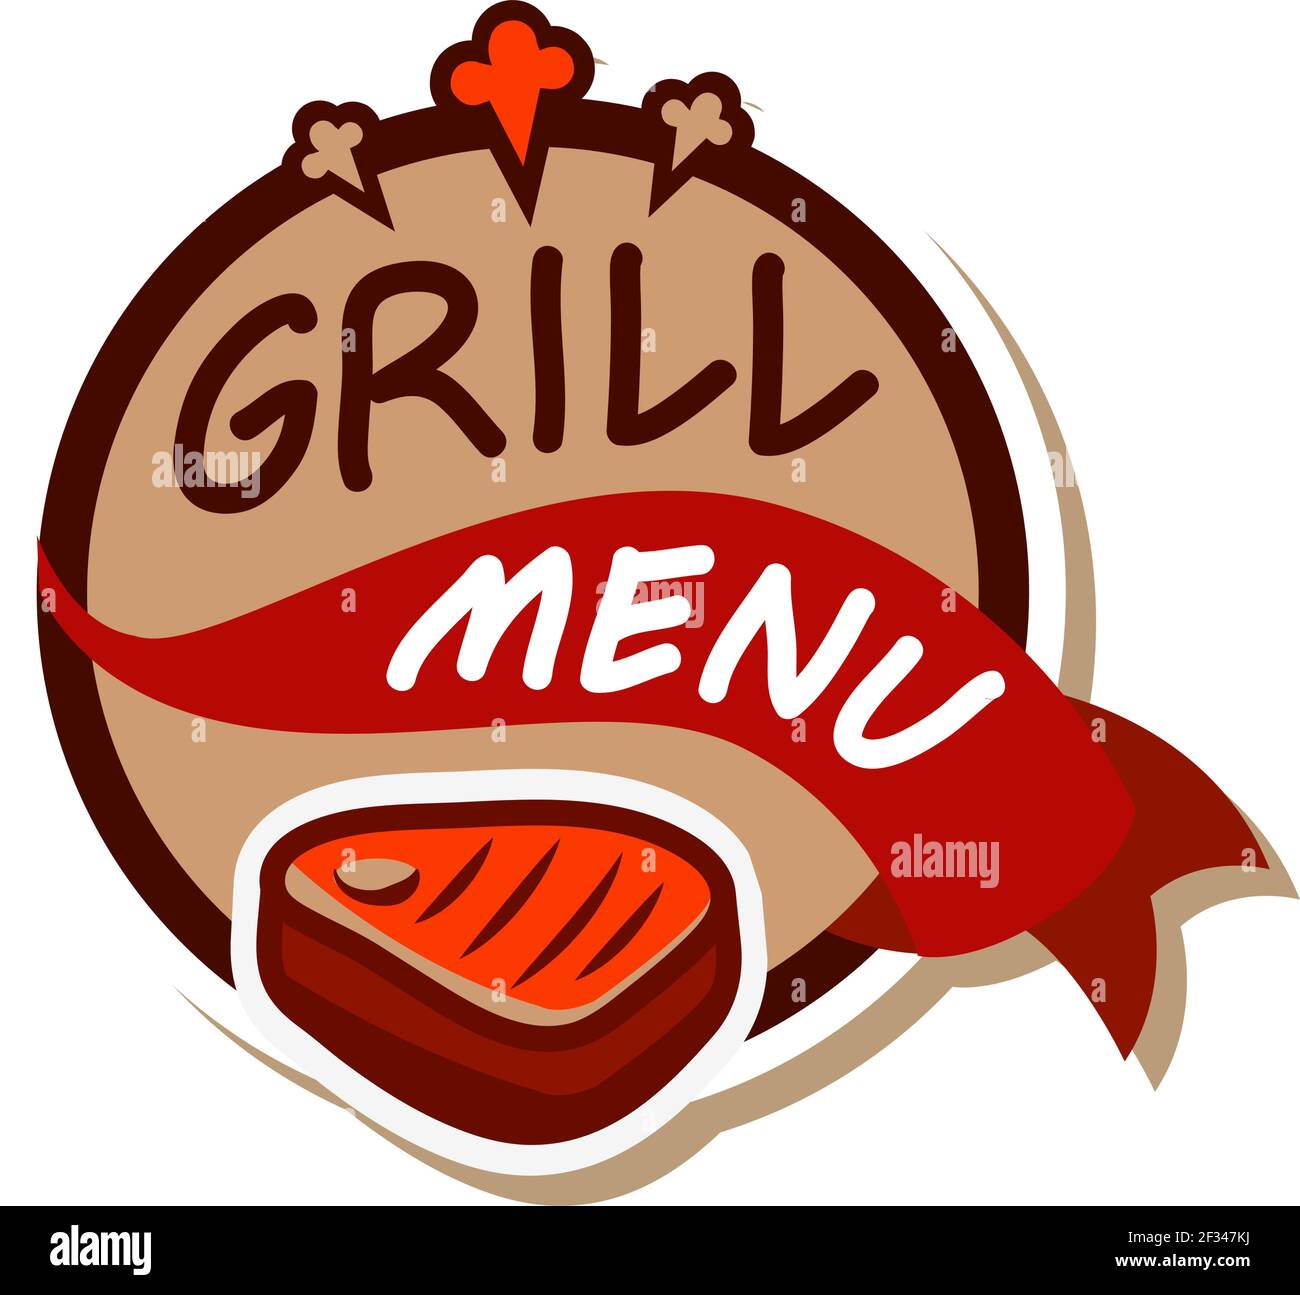 Logo des Grills. Vektorgrafik auf weißem Hintergrund Stock Vektor